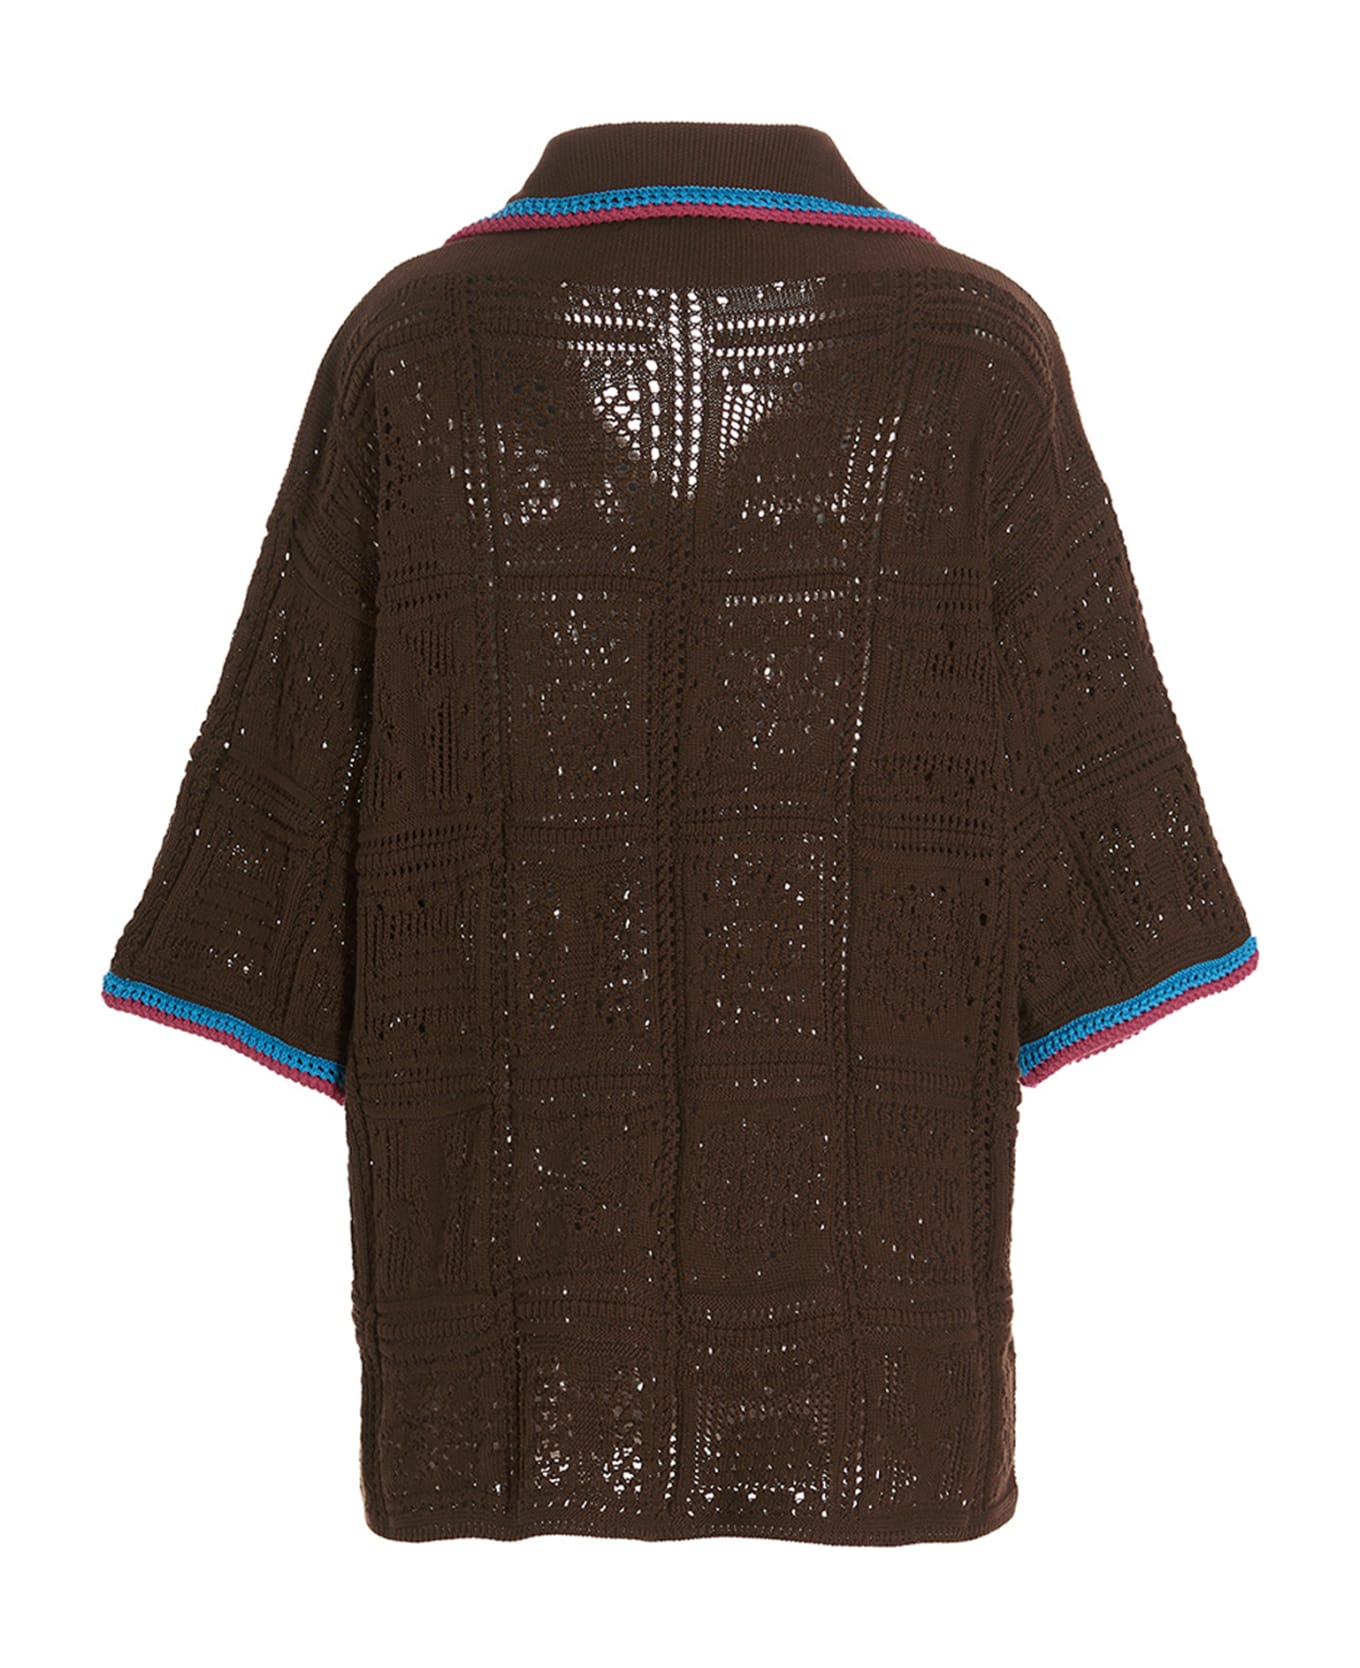 Avril8790 Patch Crochet Shirt - Brown